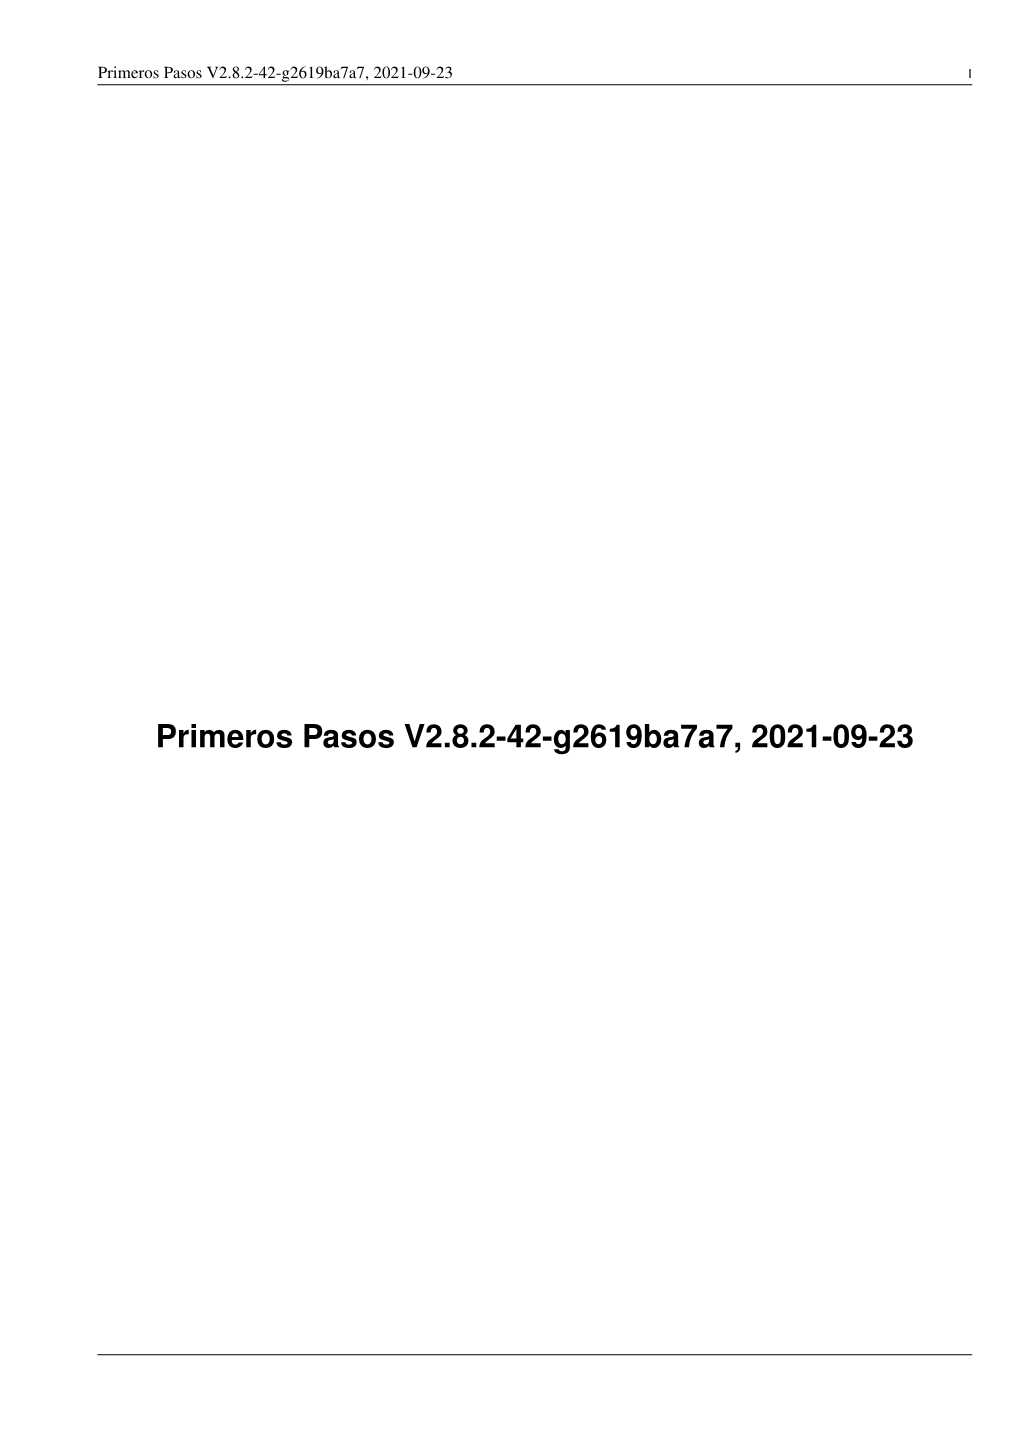 Primeros Pasos V2.8.2-34-Ga0a1c237b, 2021-08-24